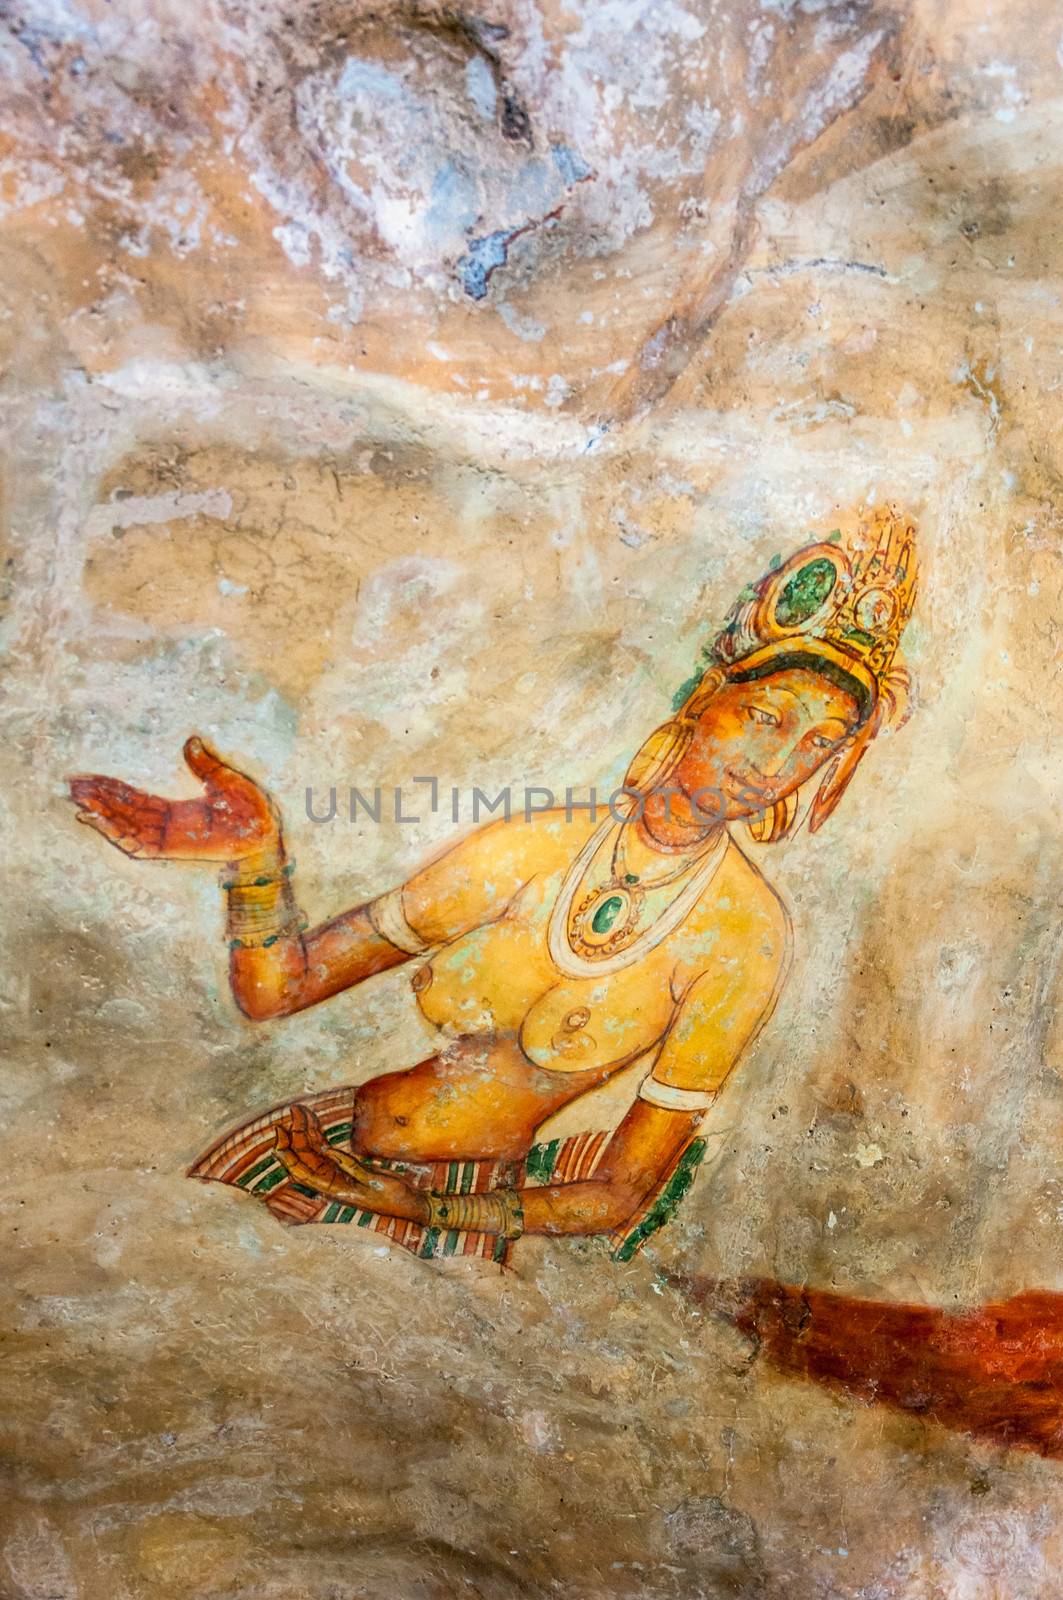 Wall paintings at Sigiriya by mkos83